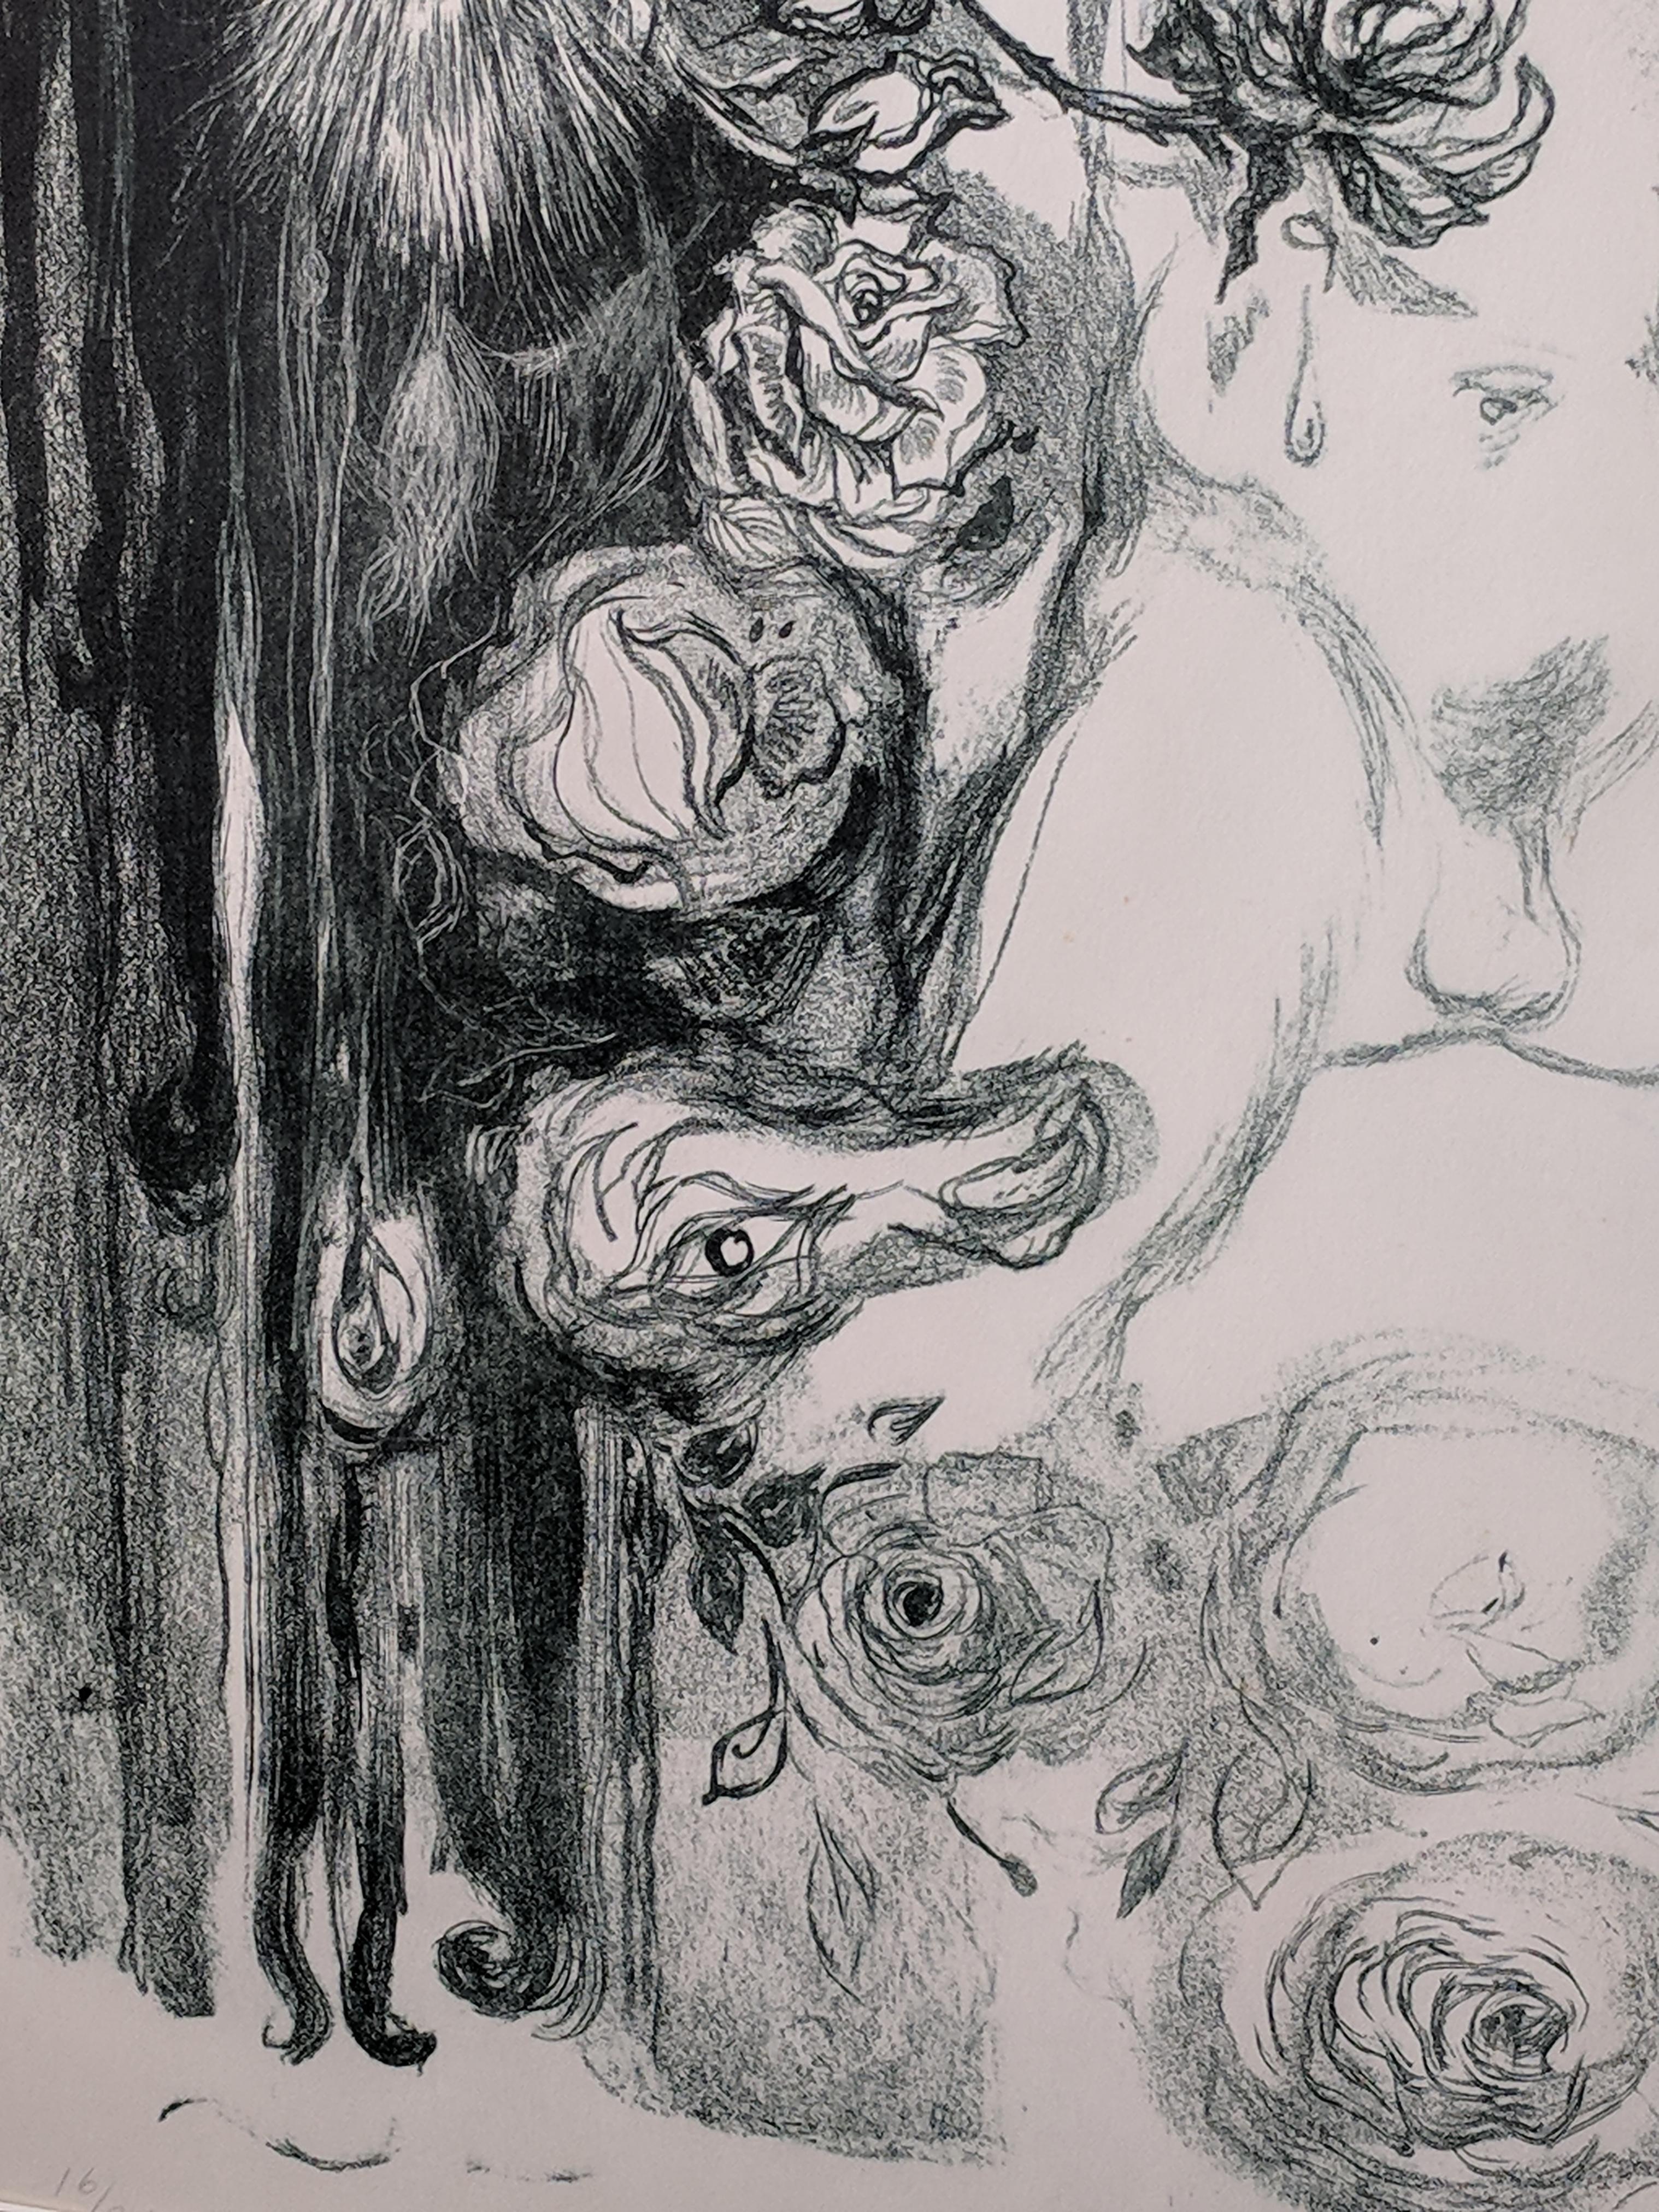 Cette lithographie dramatique en édition limitée de 16/24 représente une image érotique d'un homme avec des testicules et sans pénis. Elle est en blanc et verdi gris et imprimée sur papier lourd : C.M.Fabriano - 100/100 COTONE. Le portrait de cet